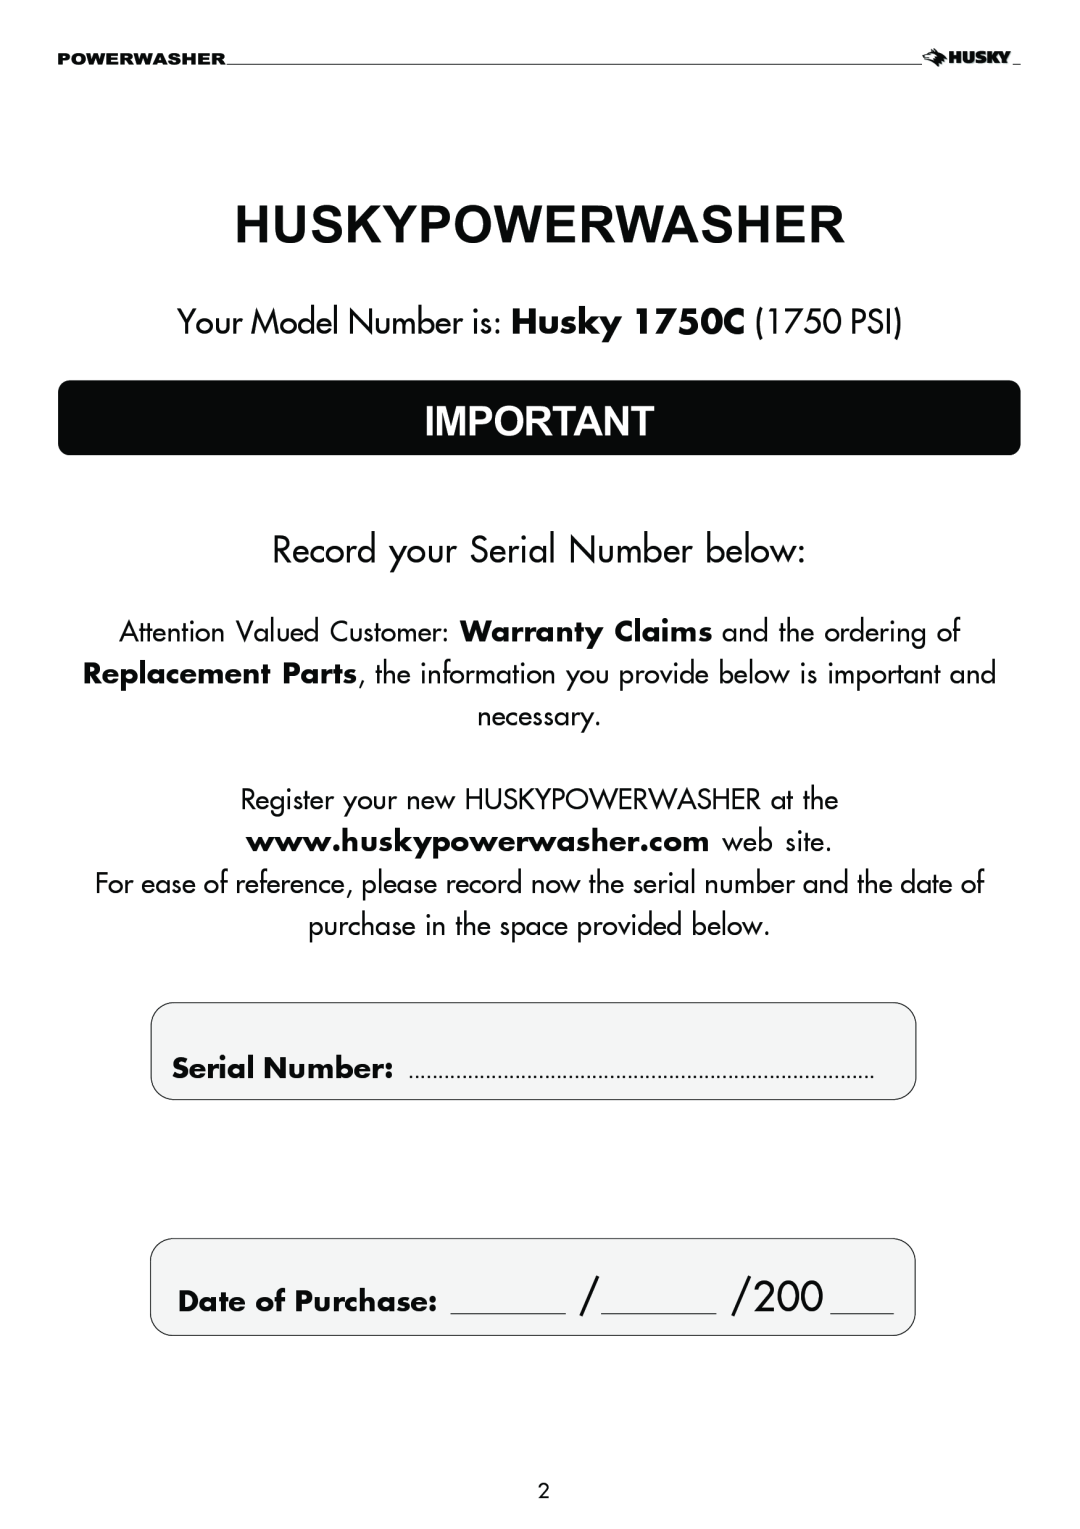 Husky 1750 PSL warranty Huskypowerwasher, Record your Serial Number below, Your Model Number is: Husky 1750C 1750 PSI 